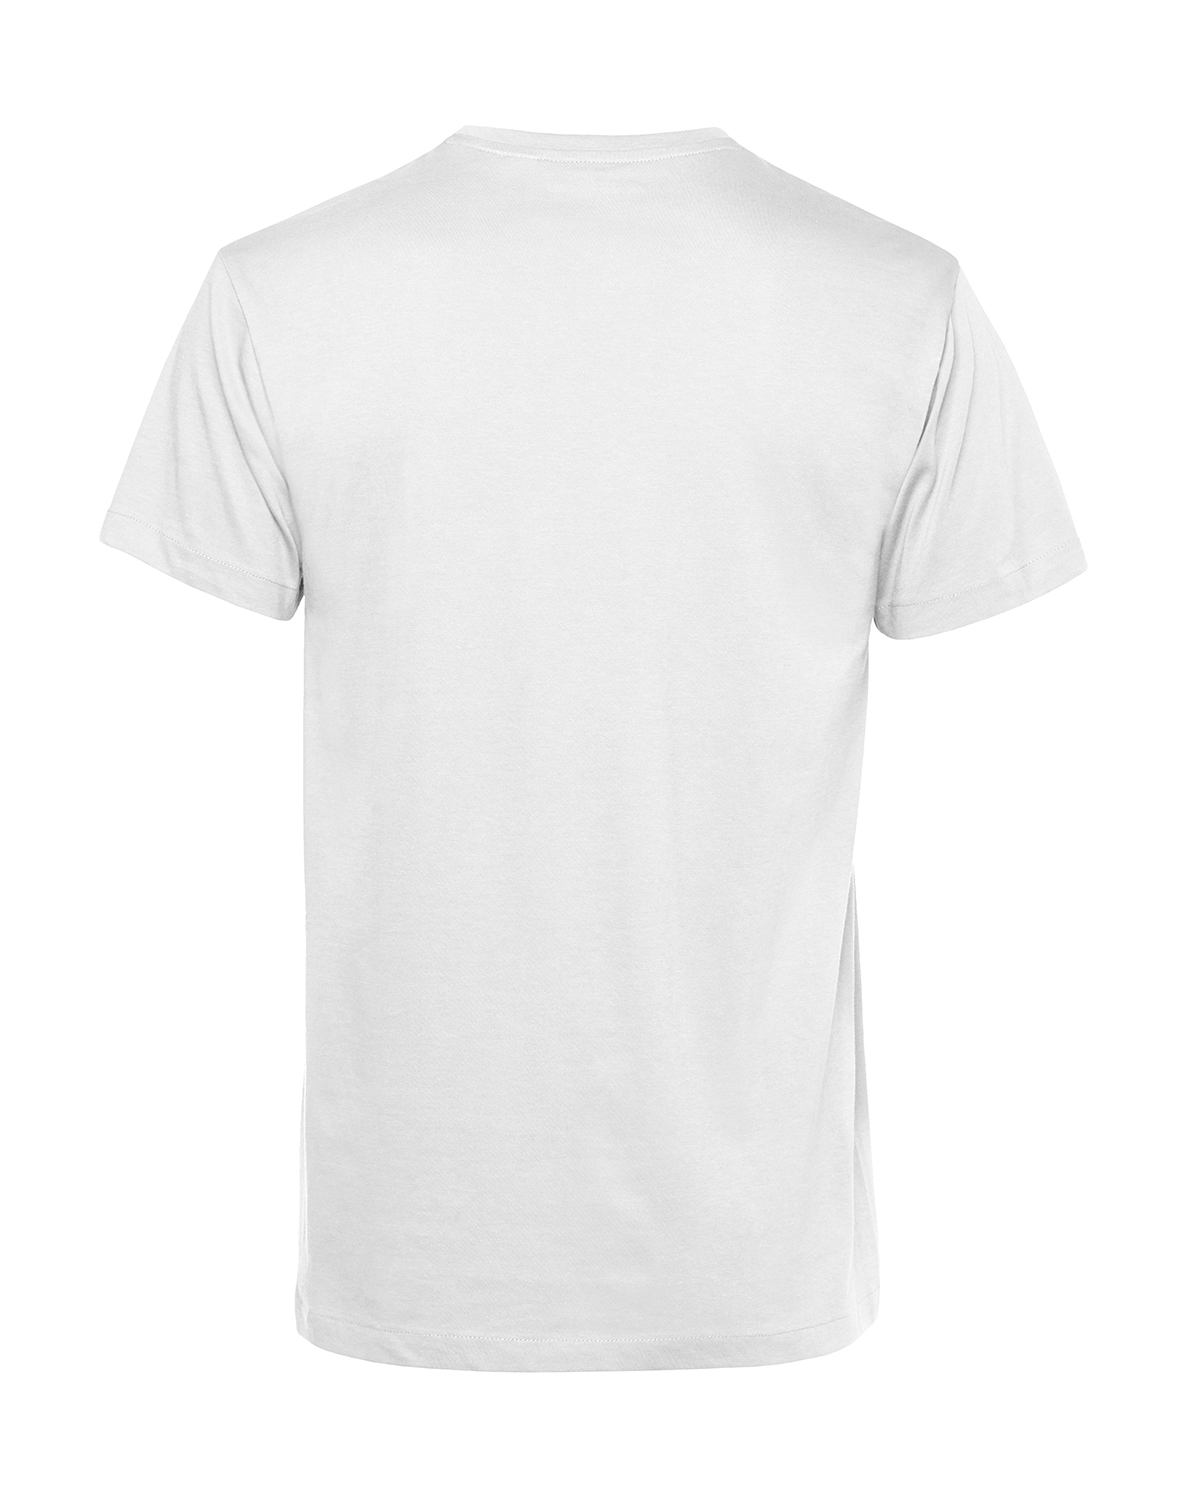 Nachhaltiges T-Shirt Herren 2Takter - Blech Karosse Nein Danke Trabant